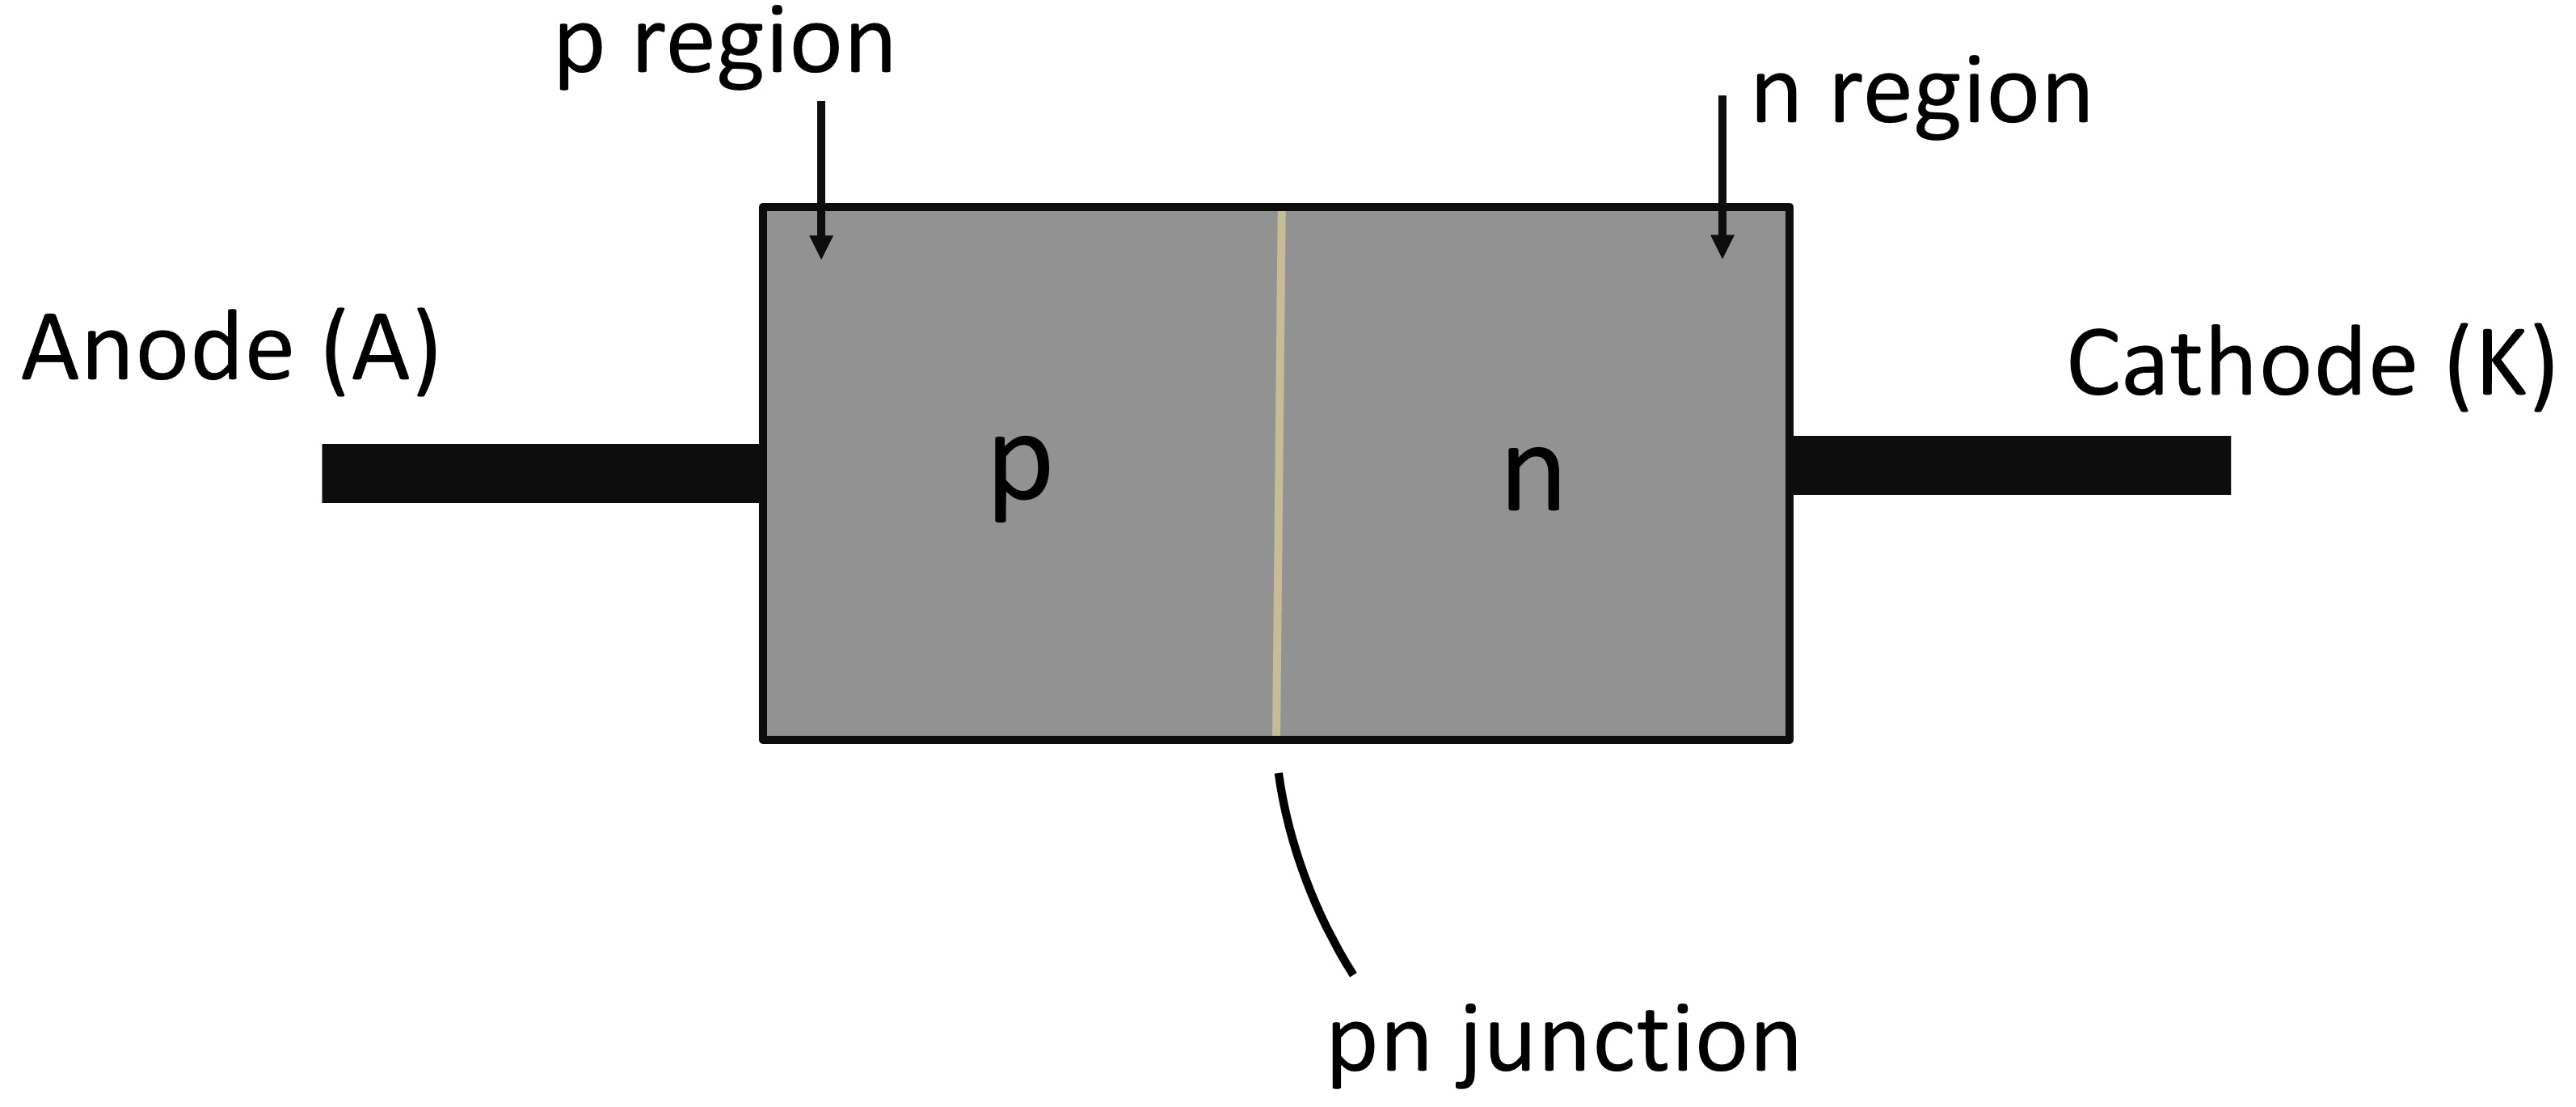 diode block diagram